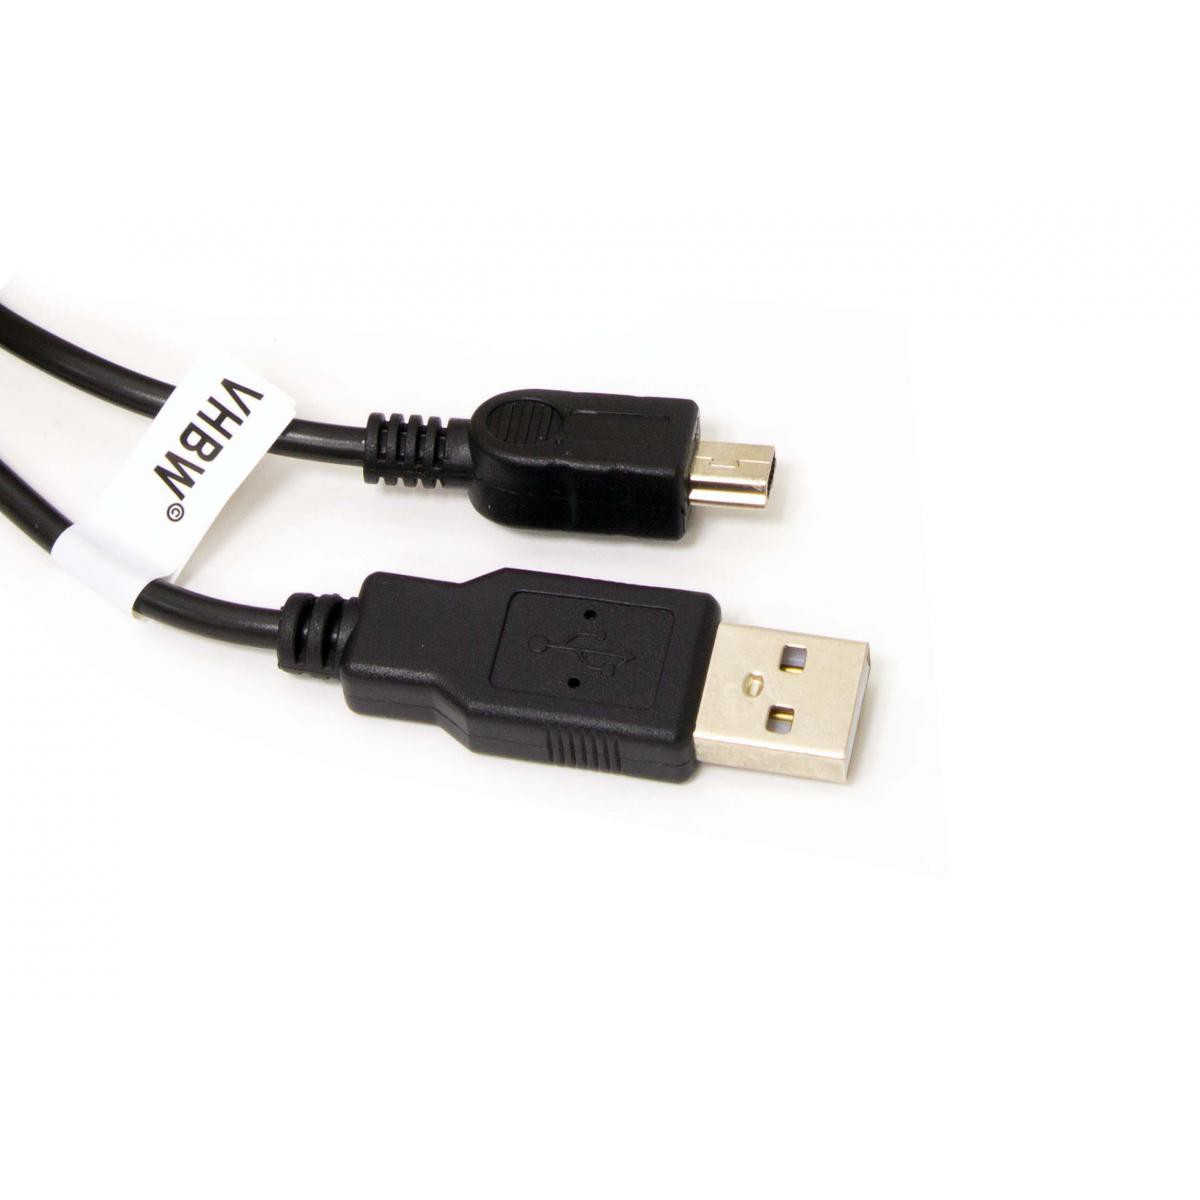 Vhbw - Câble USB A-Mini-B 5 pôles noir/black, longueur 1m, pour JVC - Câble antenne